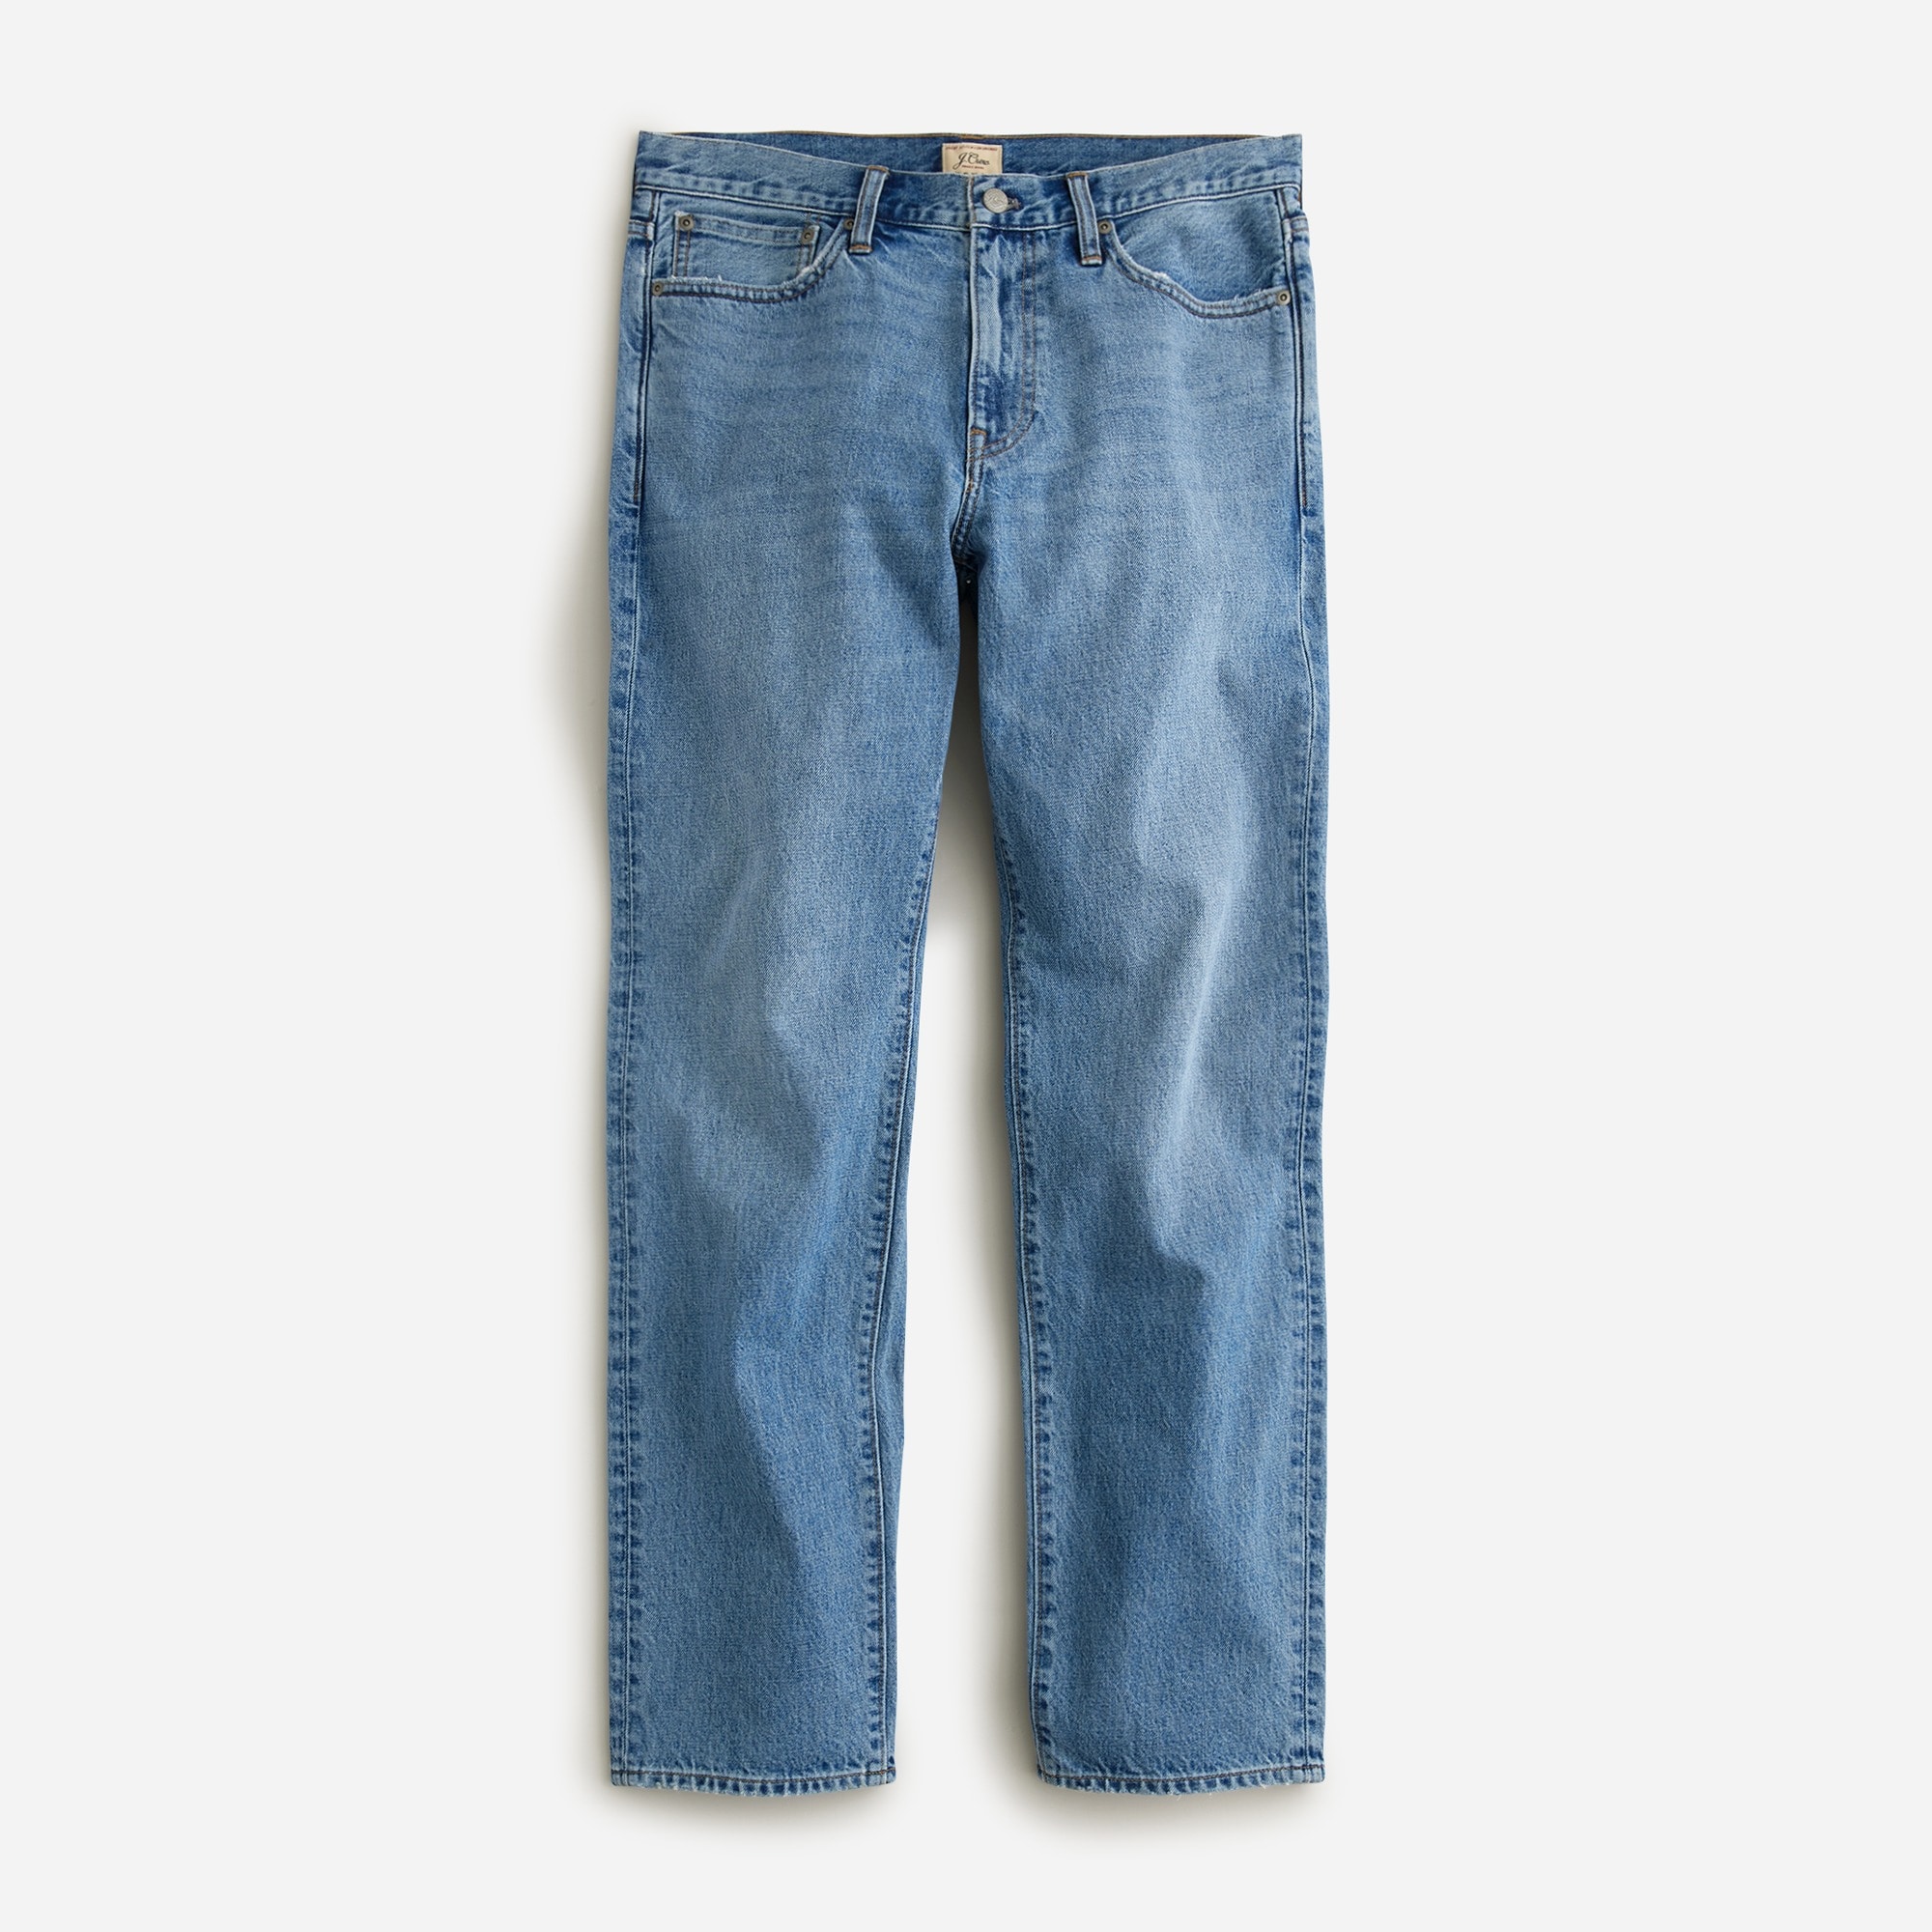 mens Classic jean in medium wash